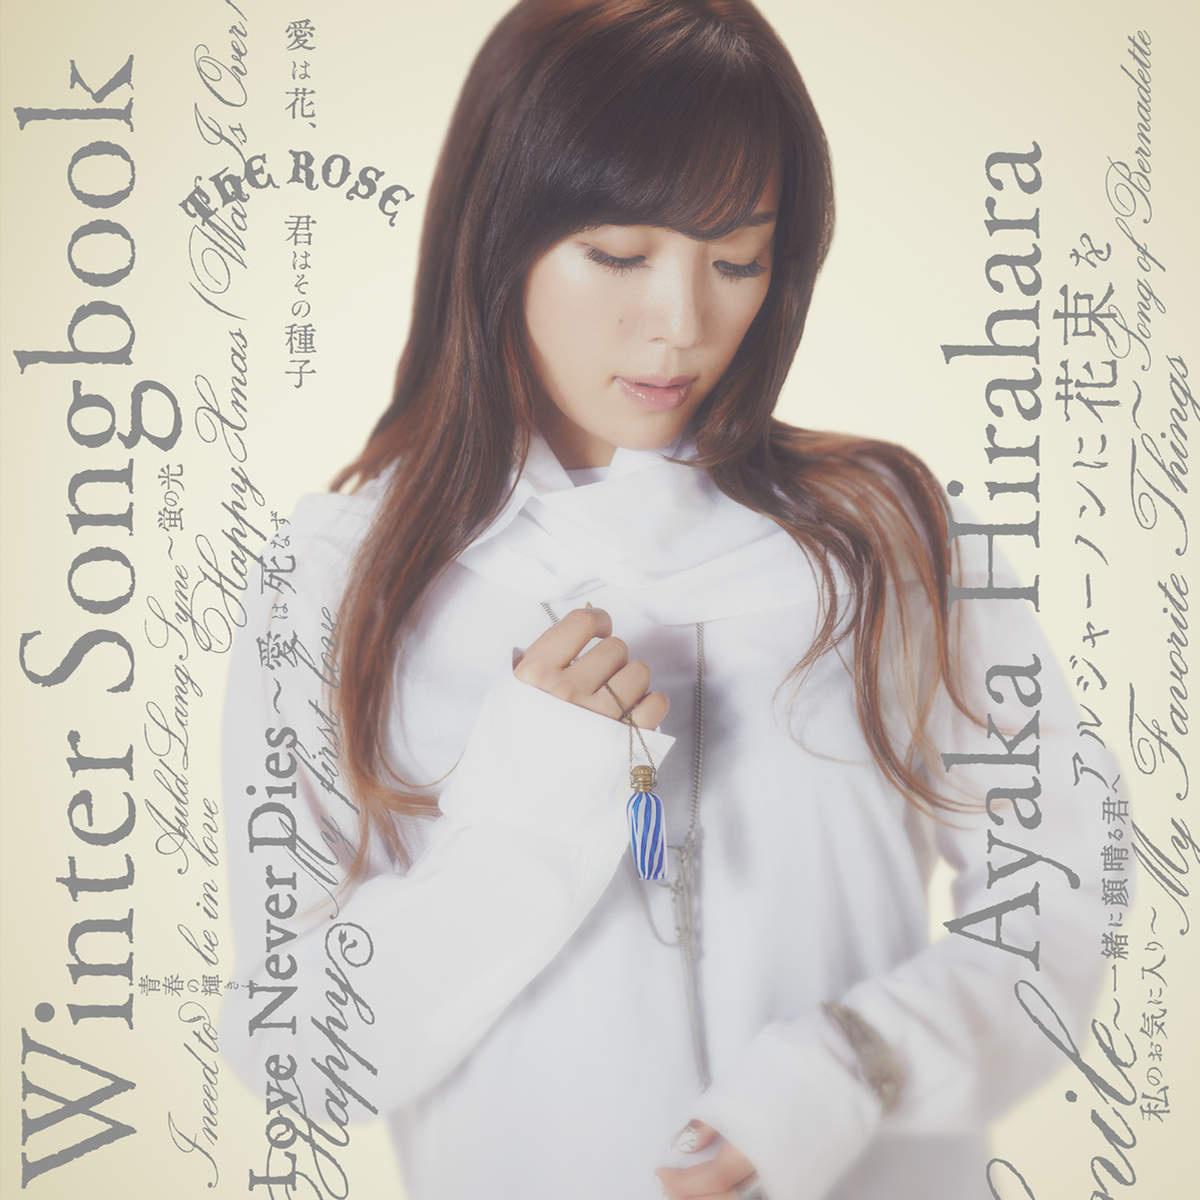 Winter Songbook专辑